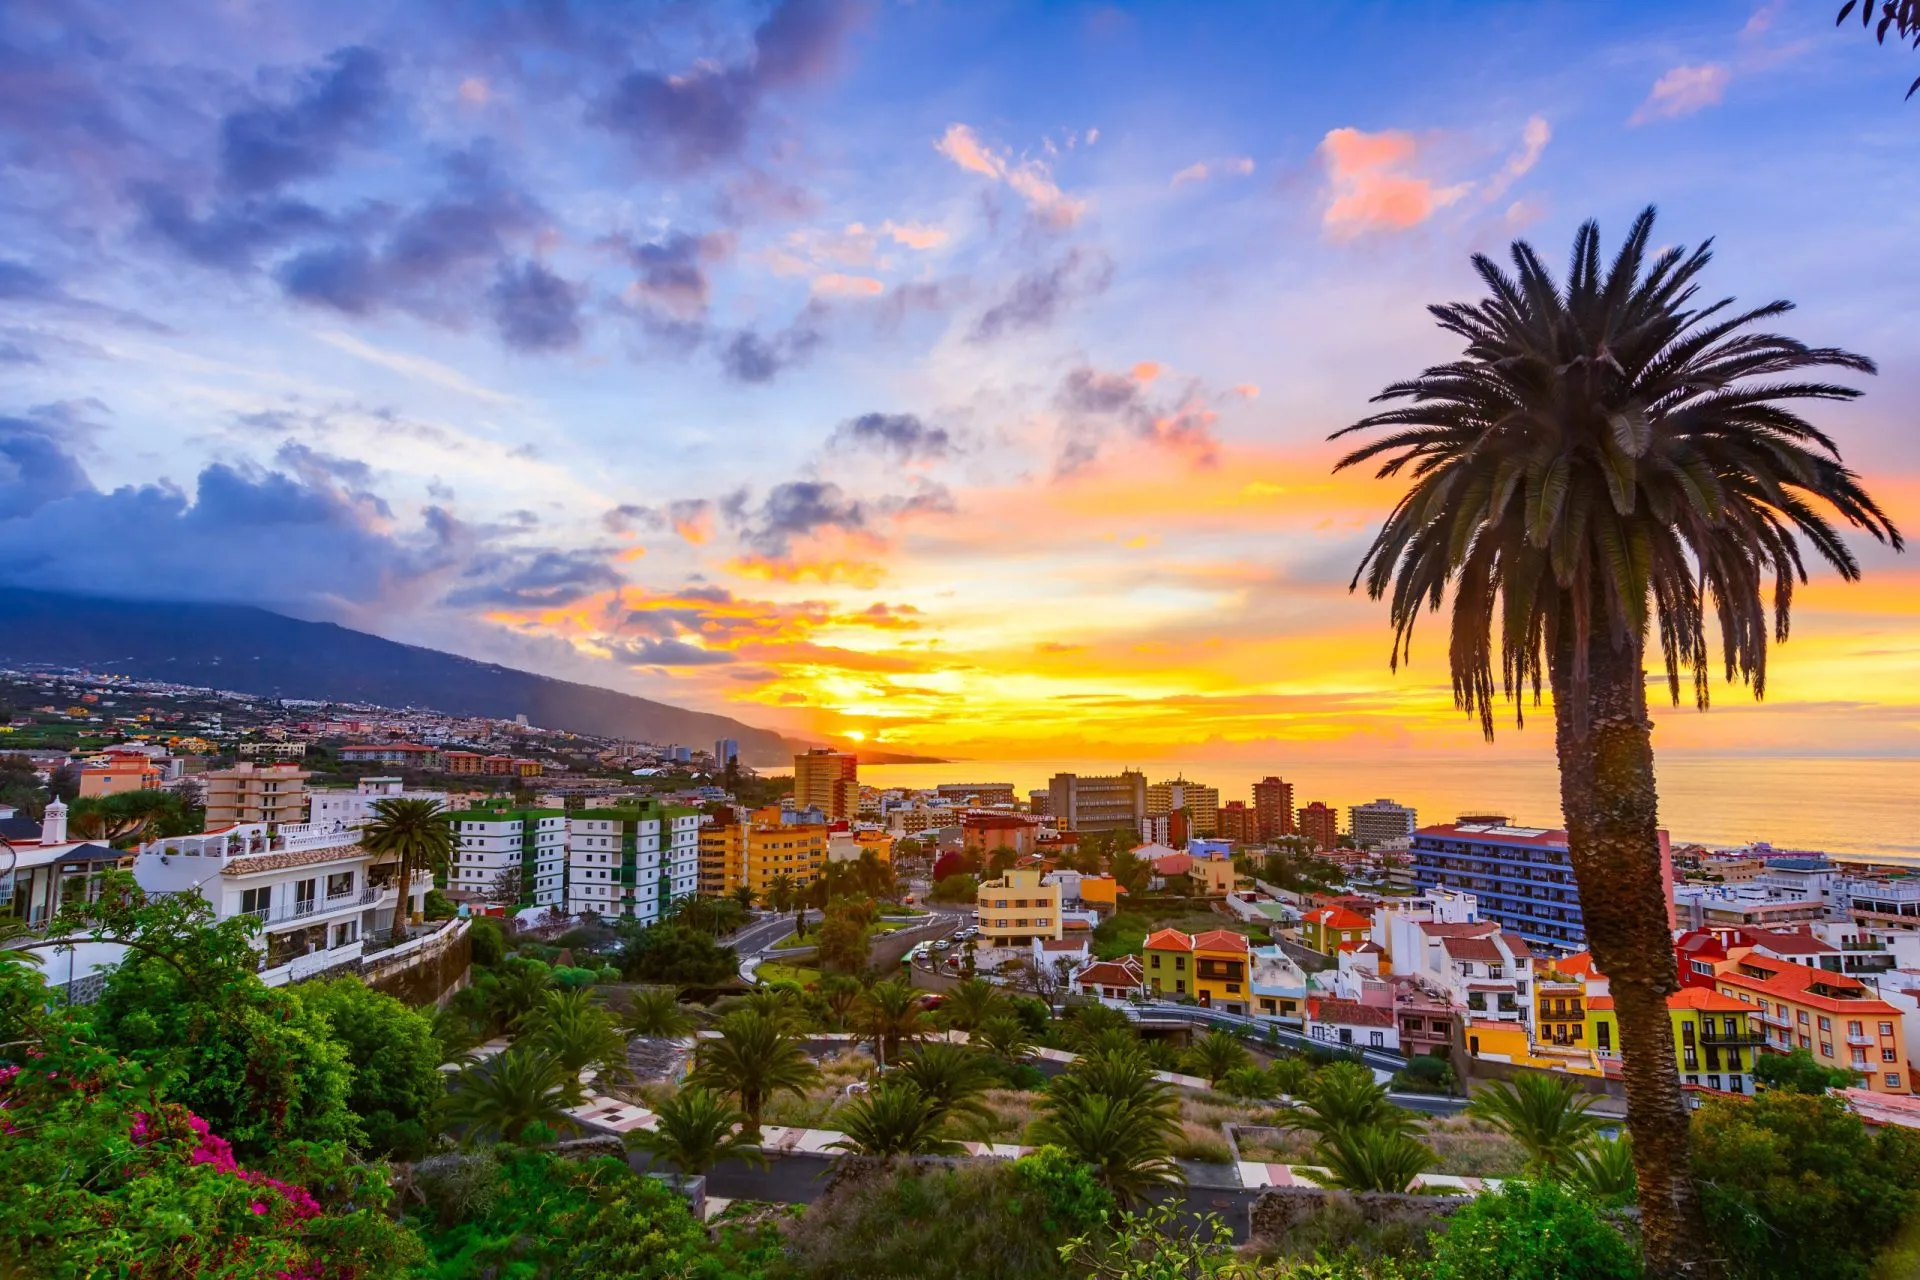 Puerto de la Cruz, Tenerife, Kanariøyene, Spania: Vakker utsikt over byen i solnedgangen